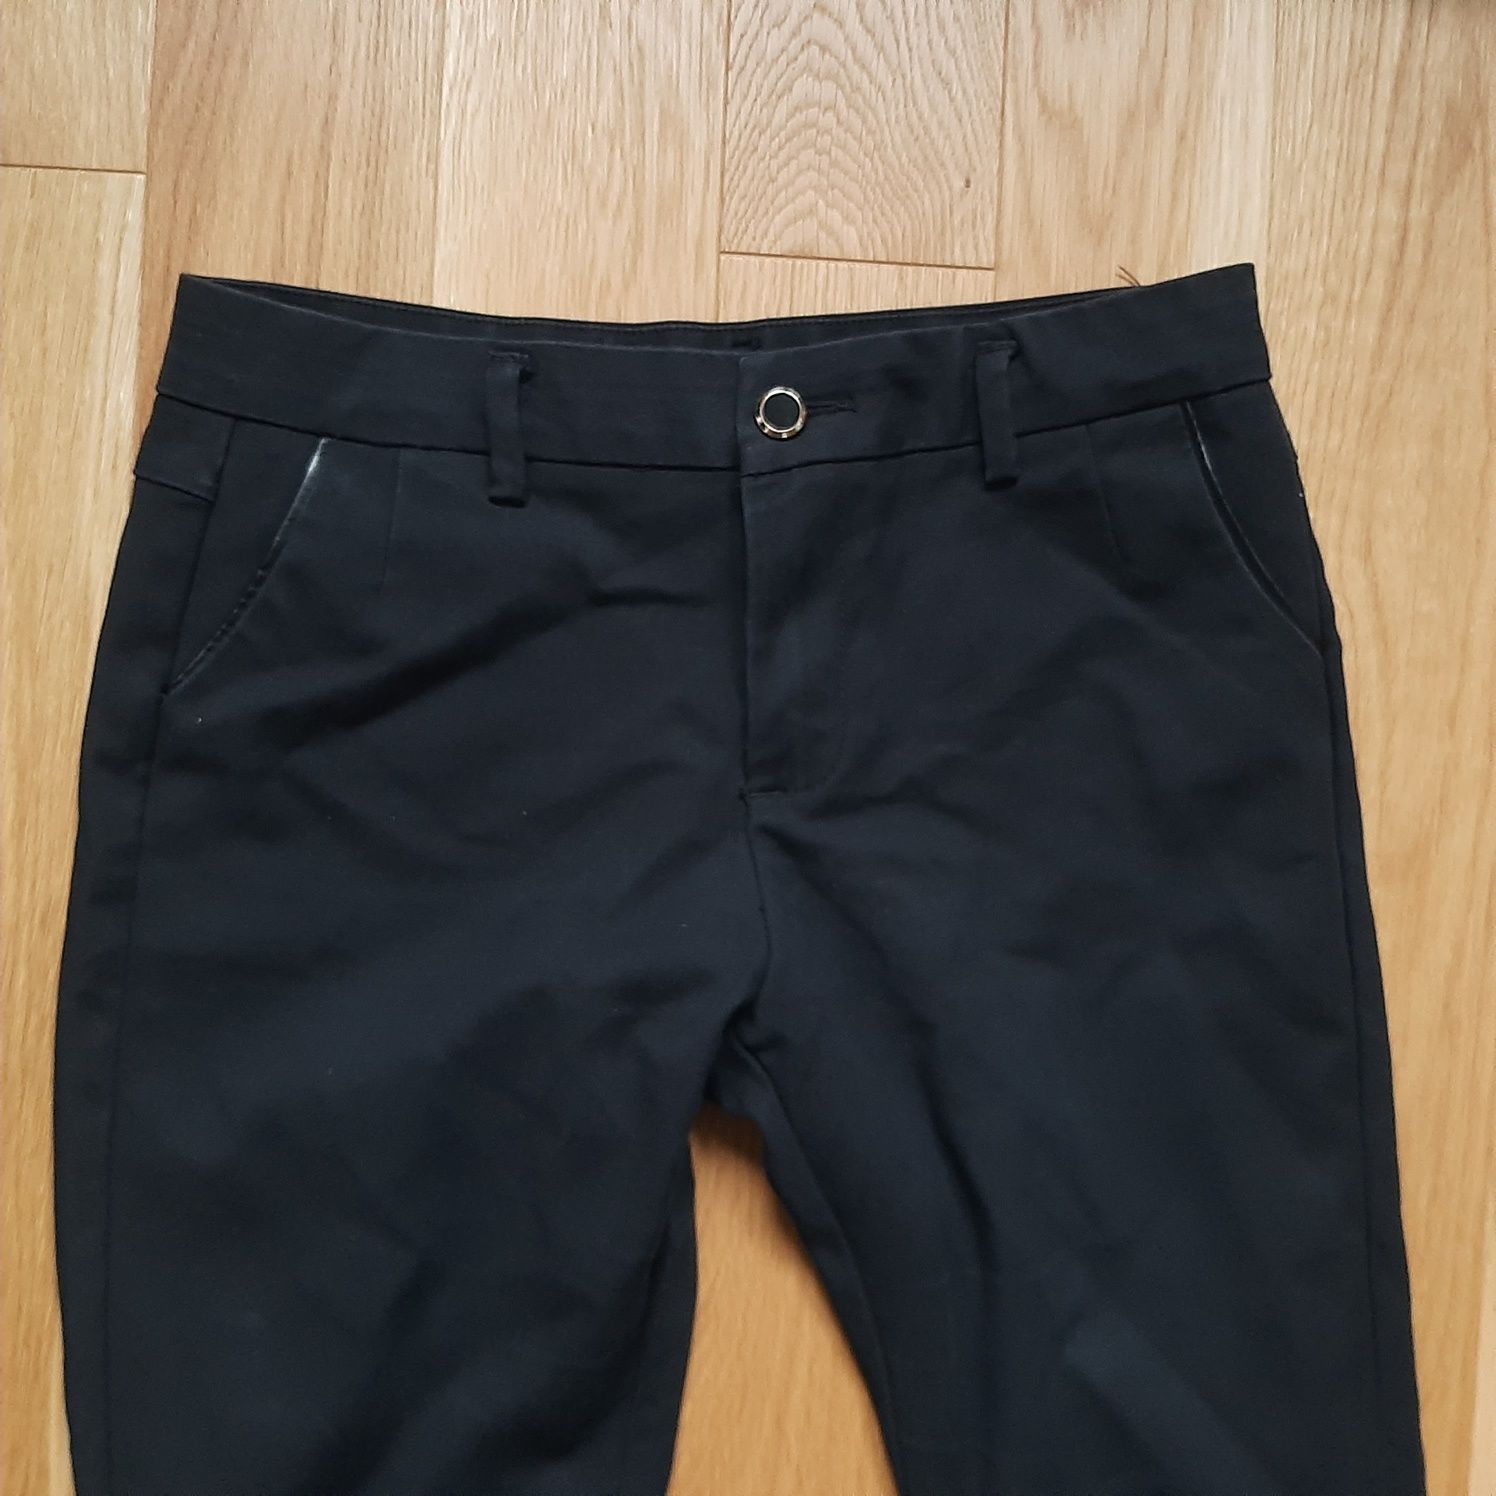 Czarne eleganckie klasyczne spodnie proste nogawki M 38 L 40 rozmiar